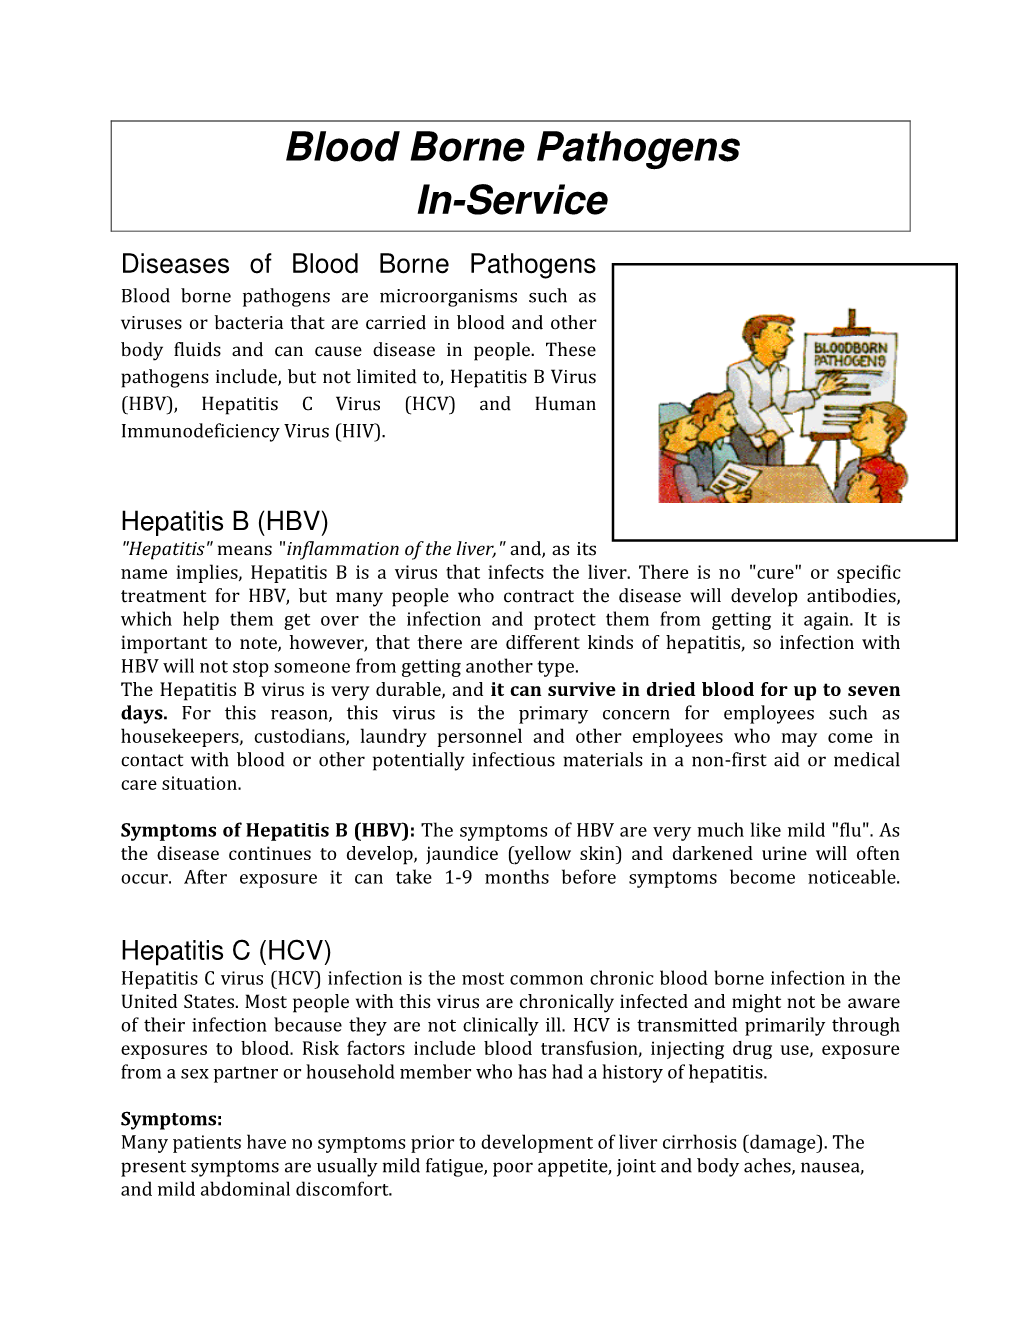 Blood Borne Pathogens In-Service